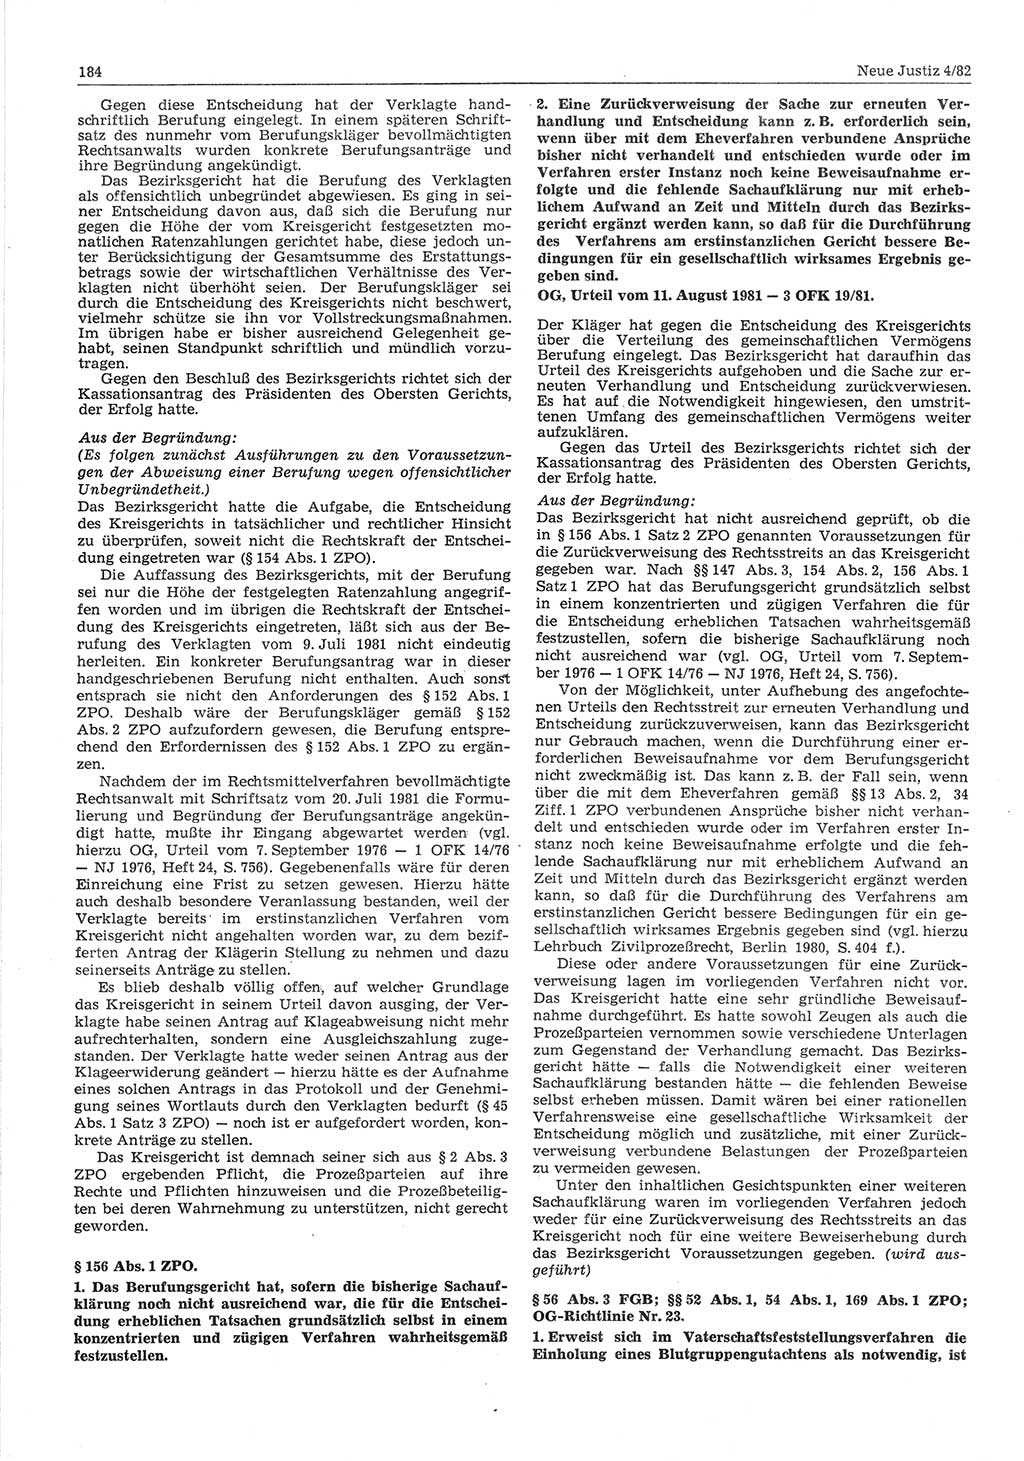 Neue Justiz (NJ), Zeitschrift für sozialistisches Recht und Gesetzlichkeit [Deutsche Demokratische Republik (DDR)], 36. Jahrgang 1982, Seite 184 (NJ DDR 1982, S. 184)